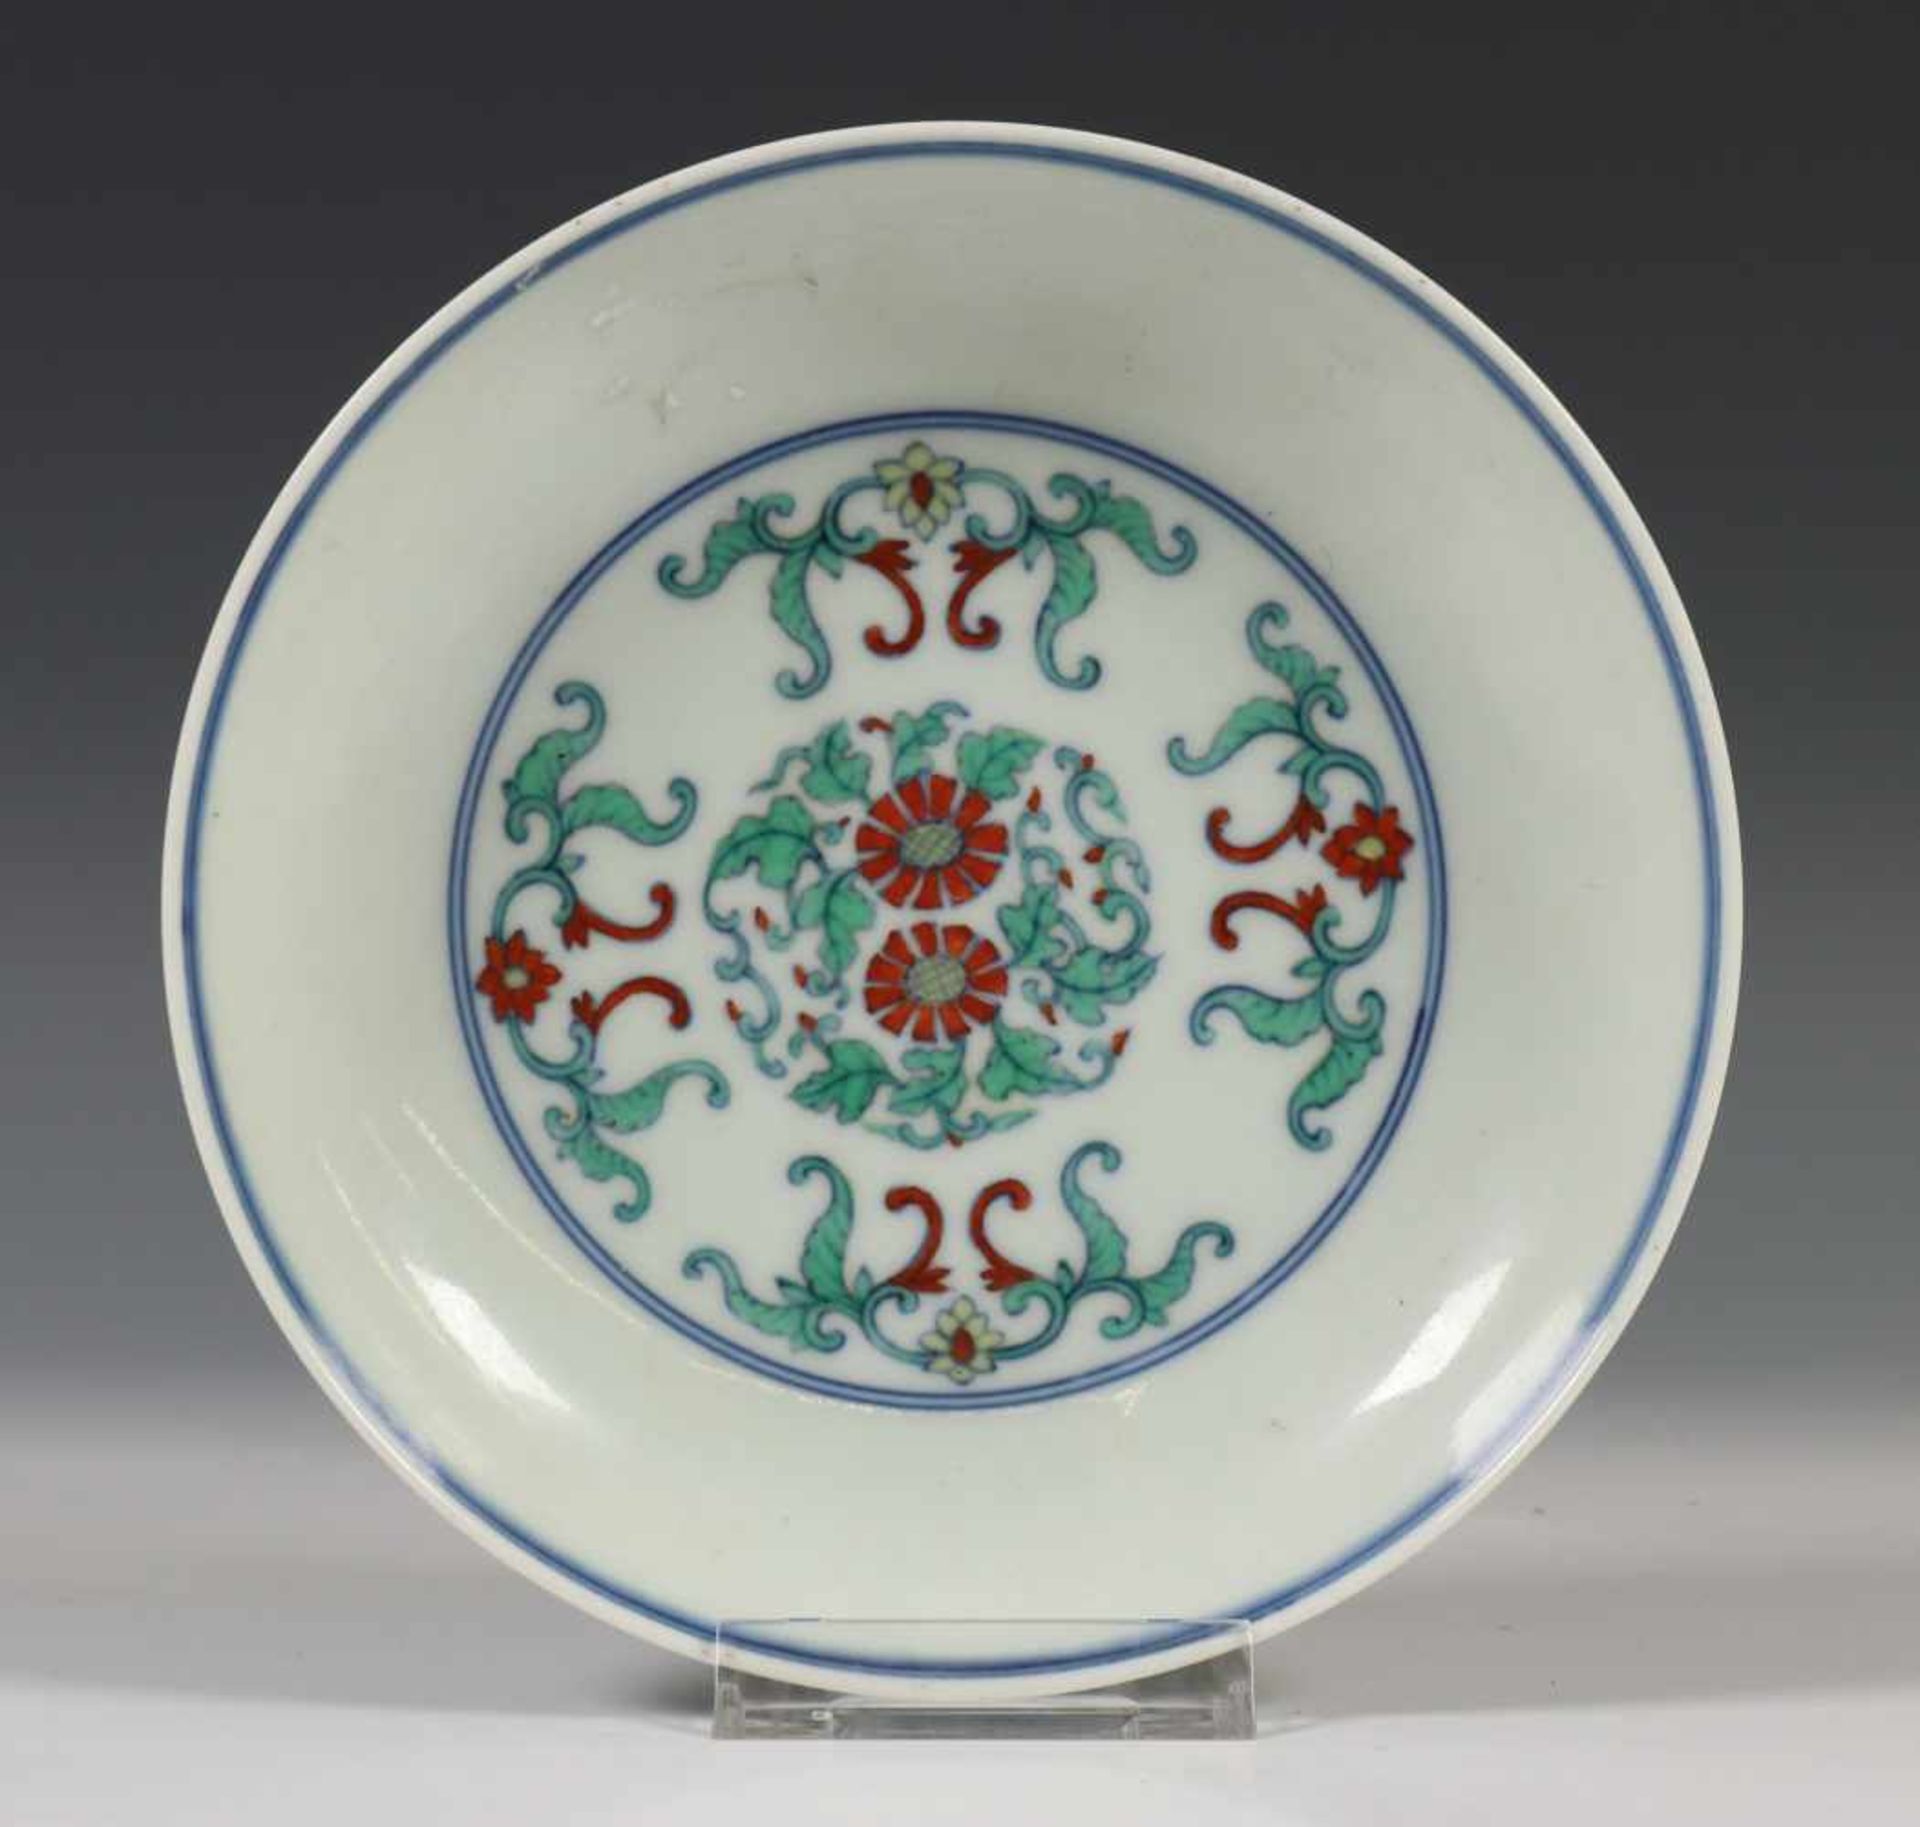 China, wucai porseleinen bord, 20e eeuw,gedecoreerd met gestileerde bloemen, met apocrief